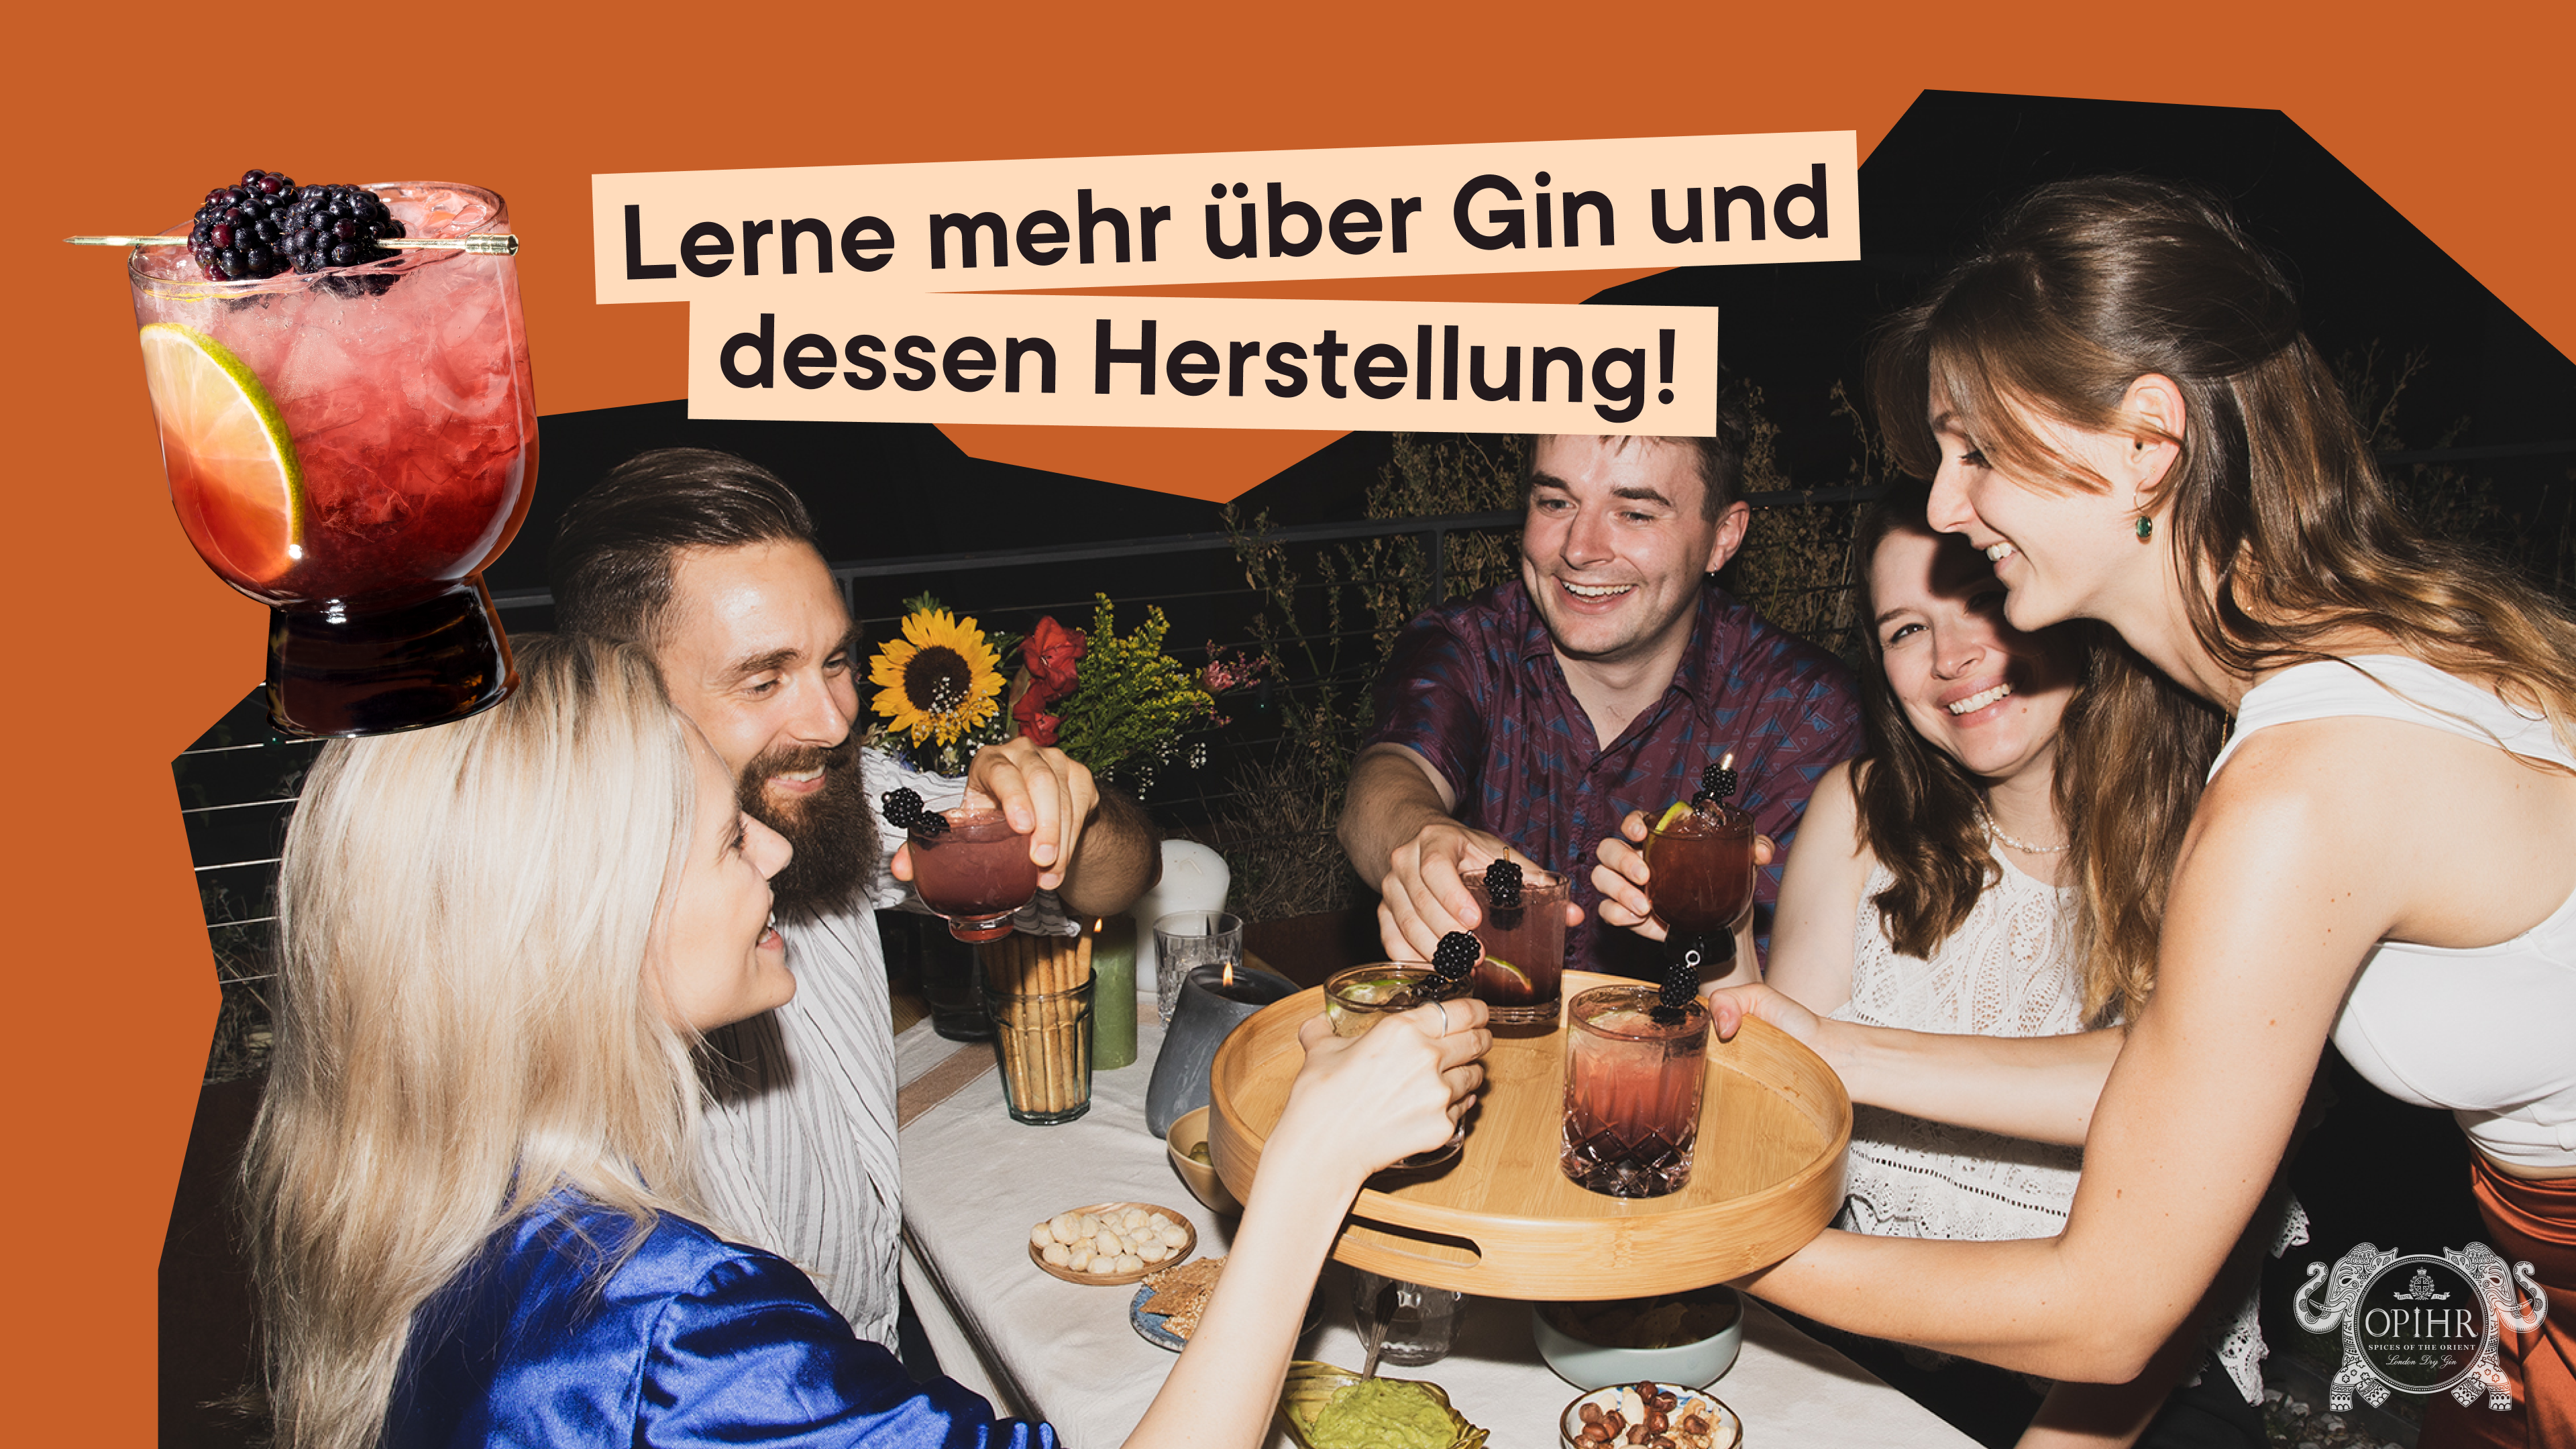 Gin-Herstellung, Food Pairing und ein spätsommerlicher Abend über den Dächern Berlins